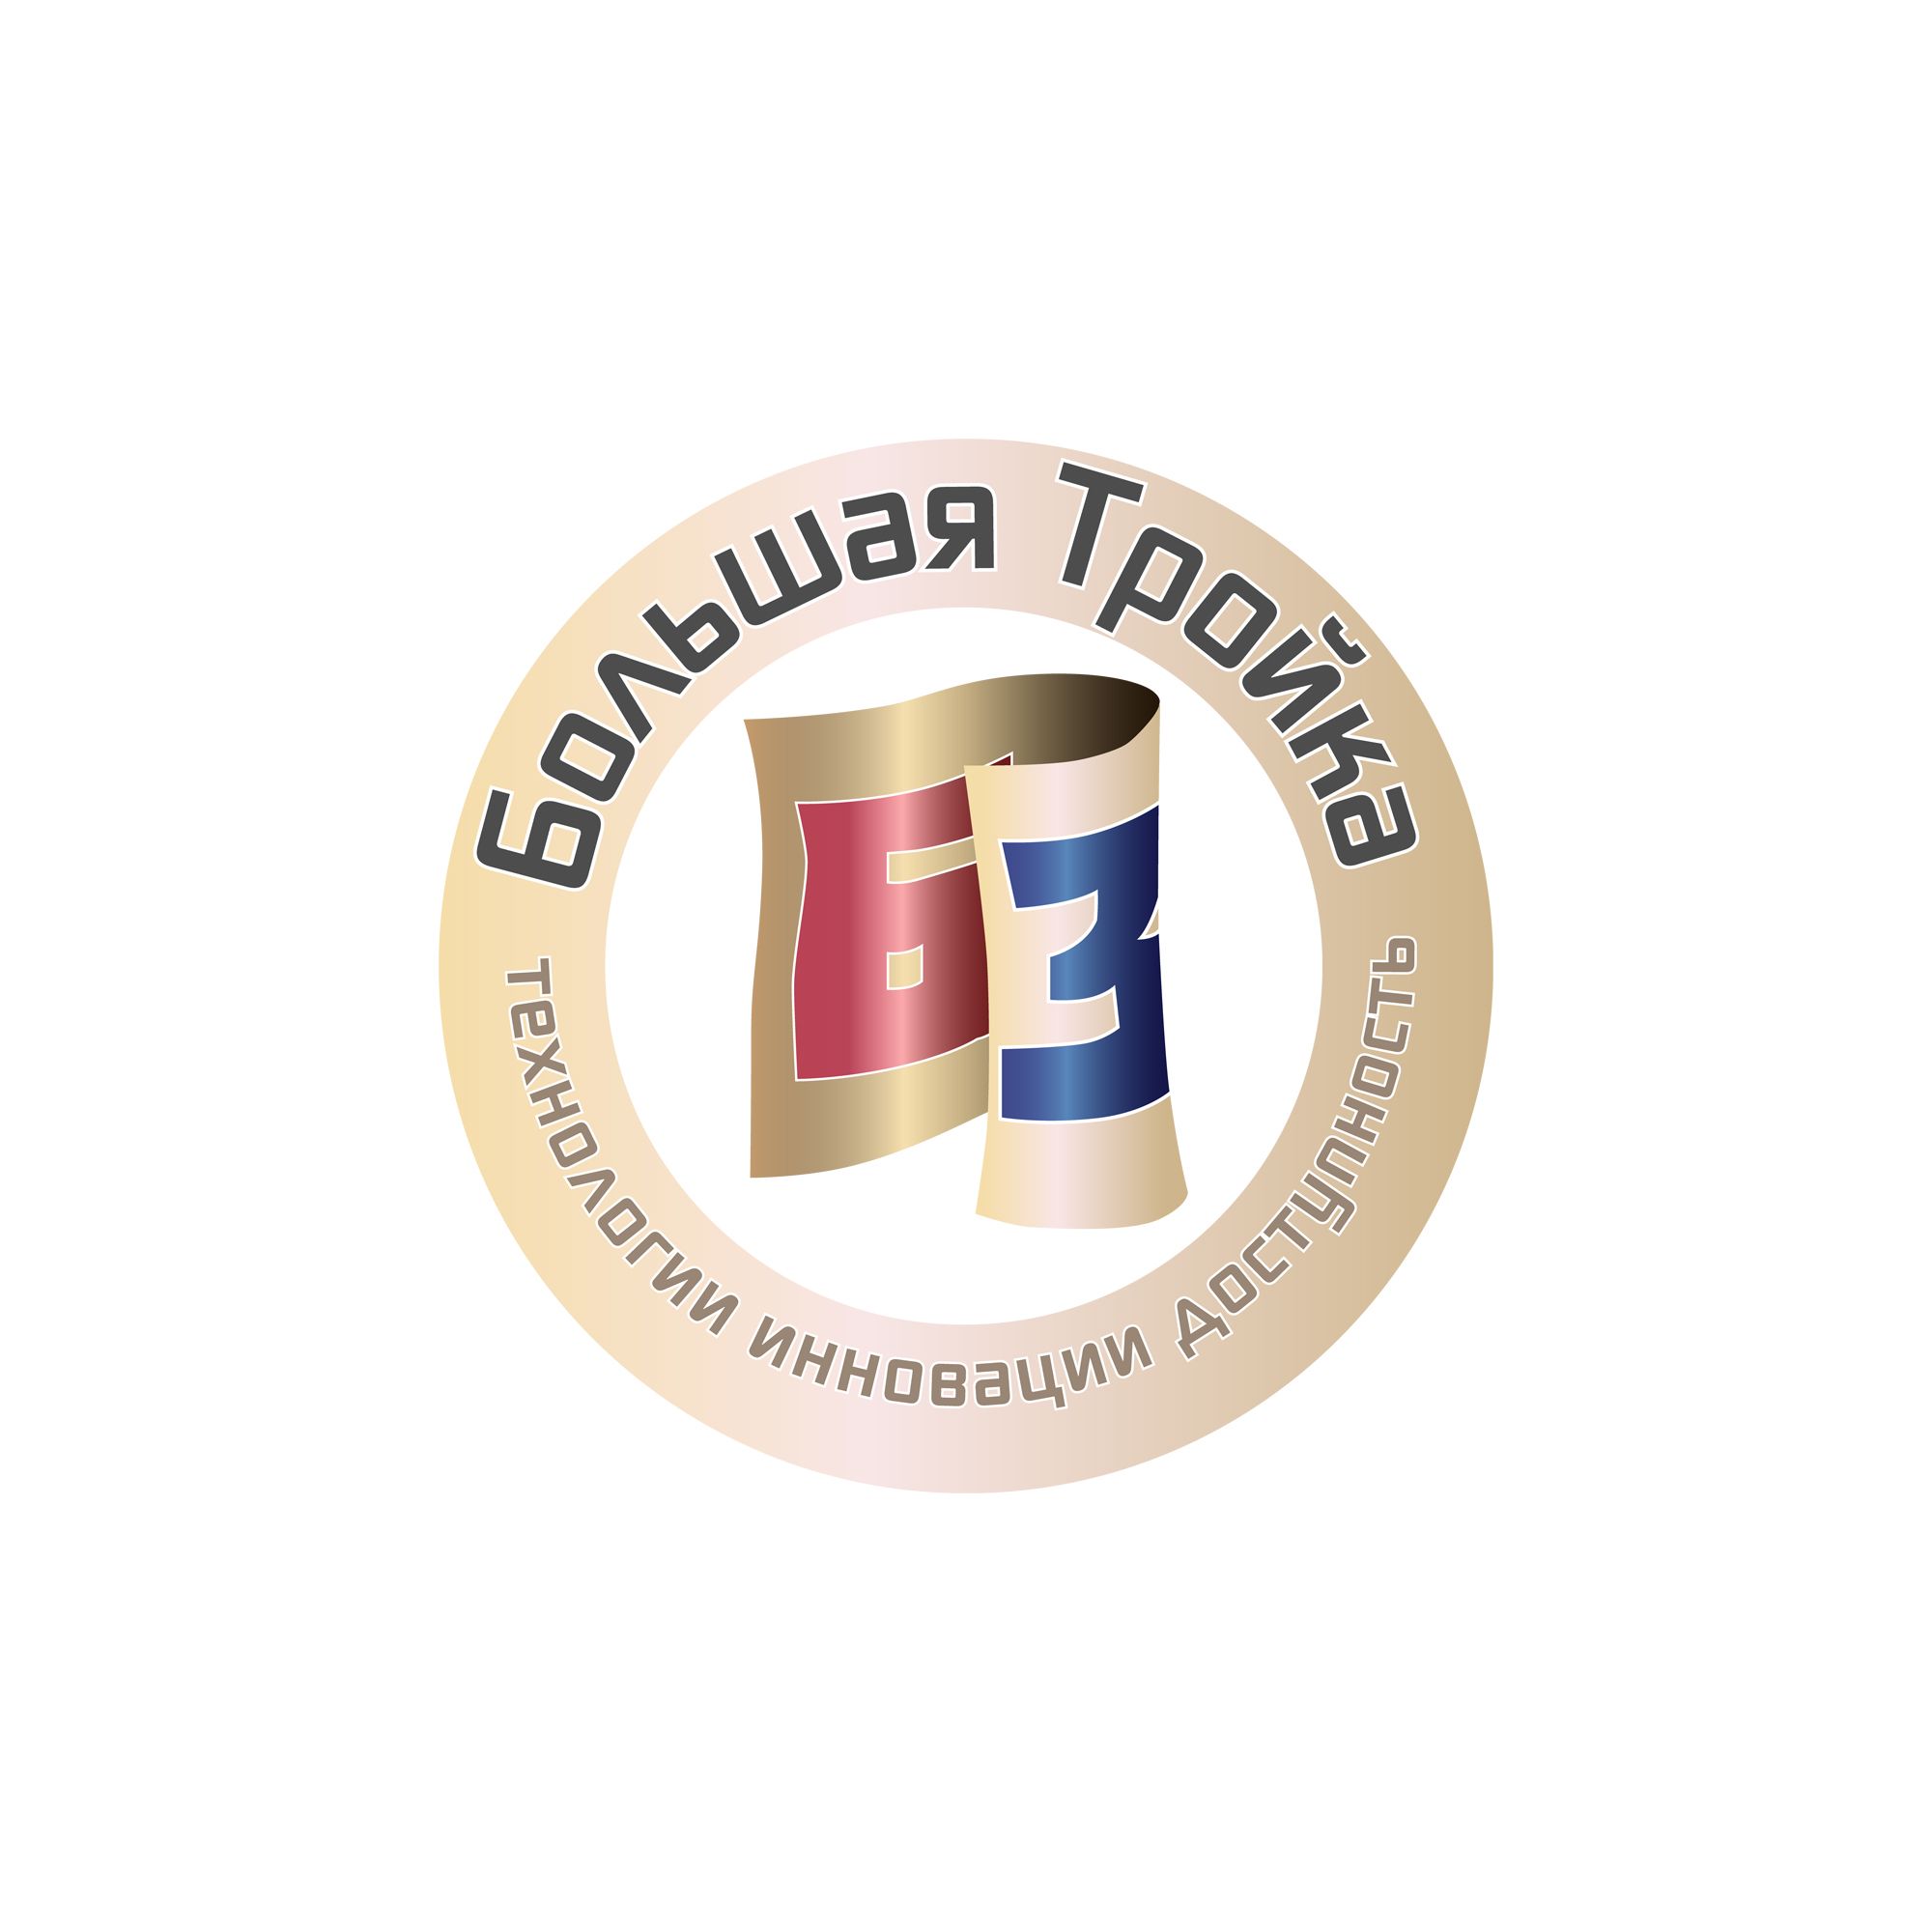 Логотип инновационной компании Большая Тройка - дизайнер atmannn